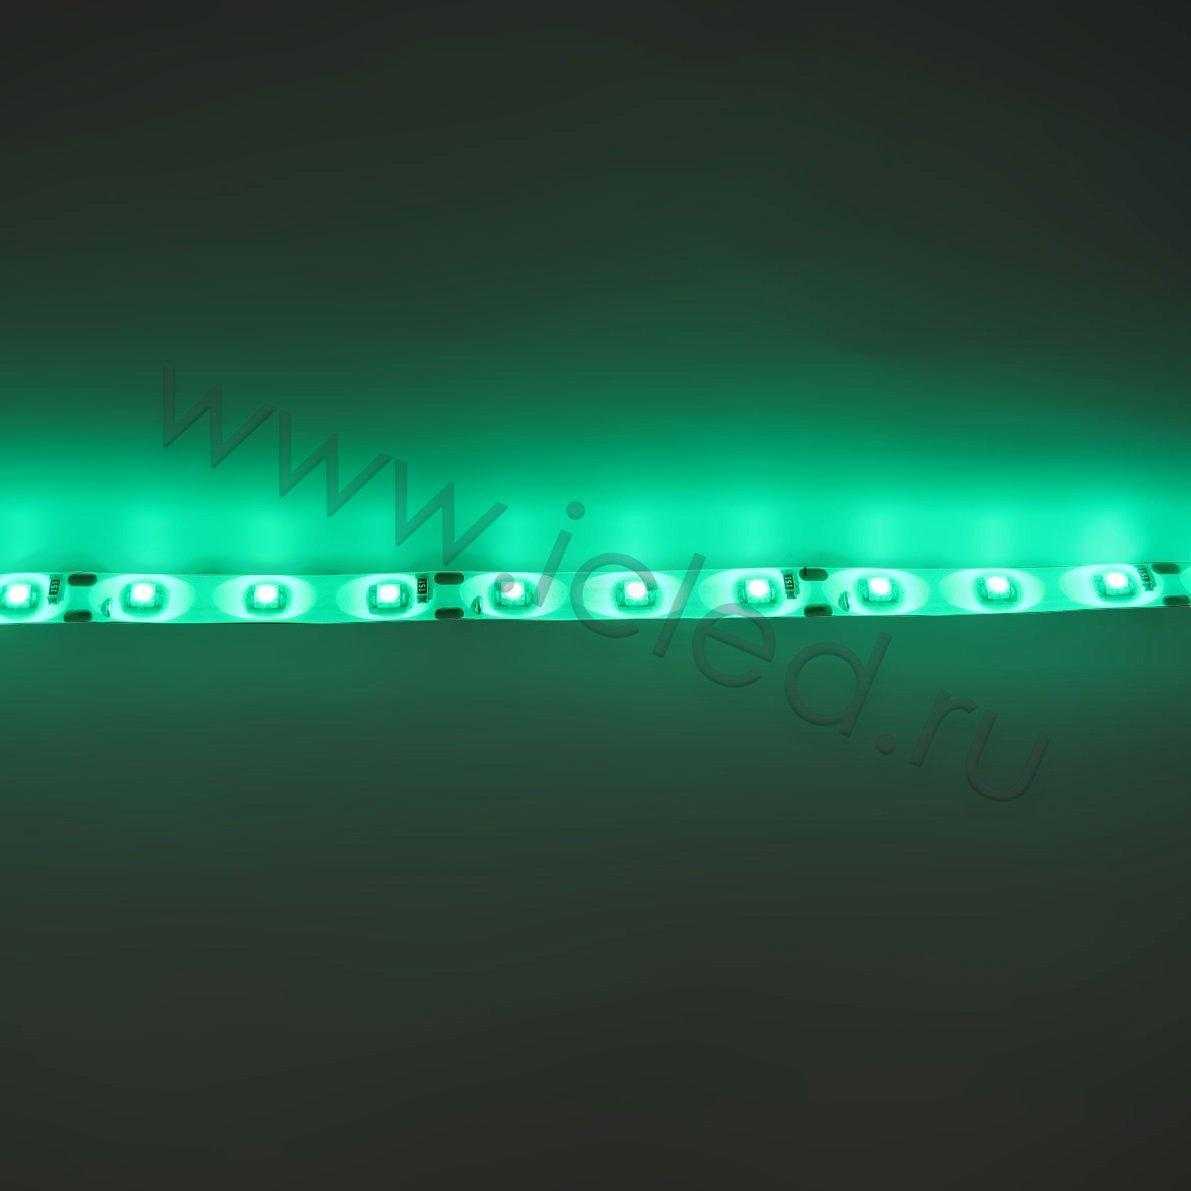 Влагозащищенные светодиодные ленты Светодиодная лента Standart class, 3528, 60led/m, Green, 12V, IP65 Icled